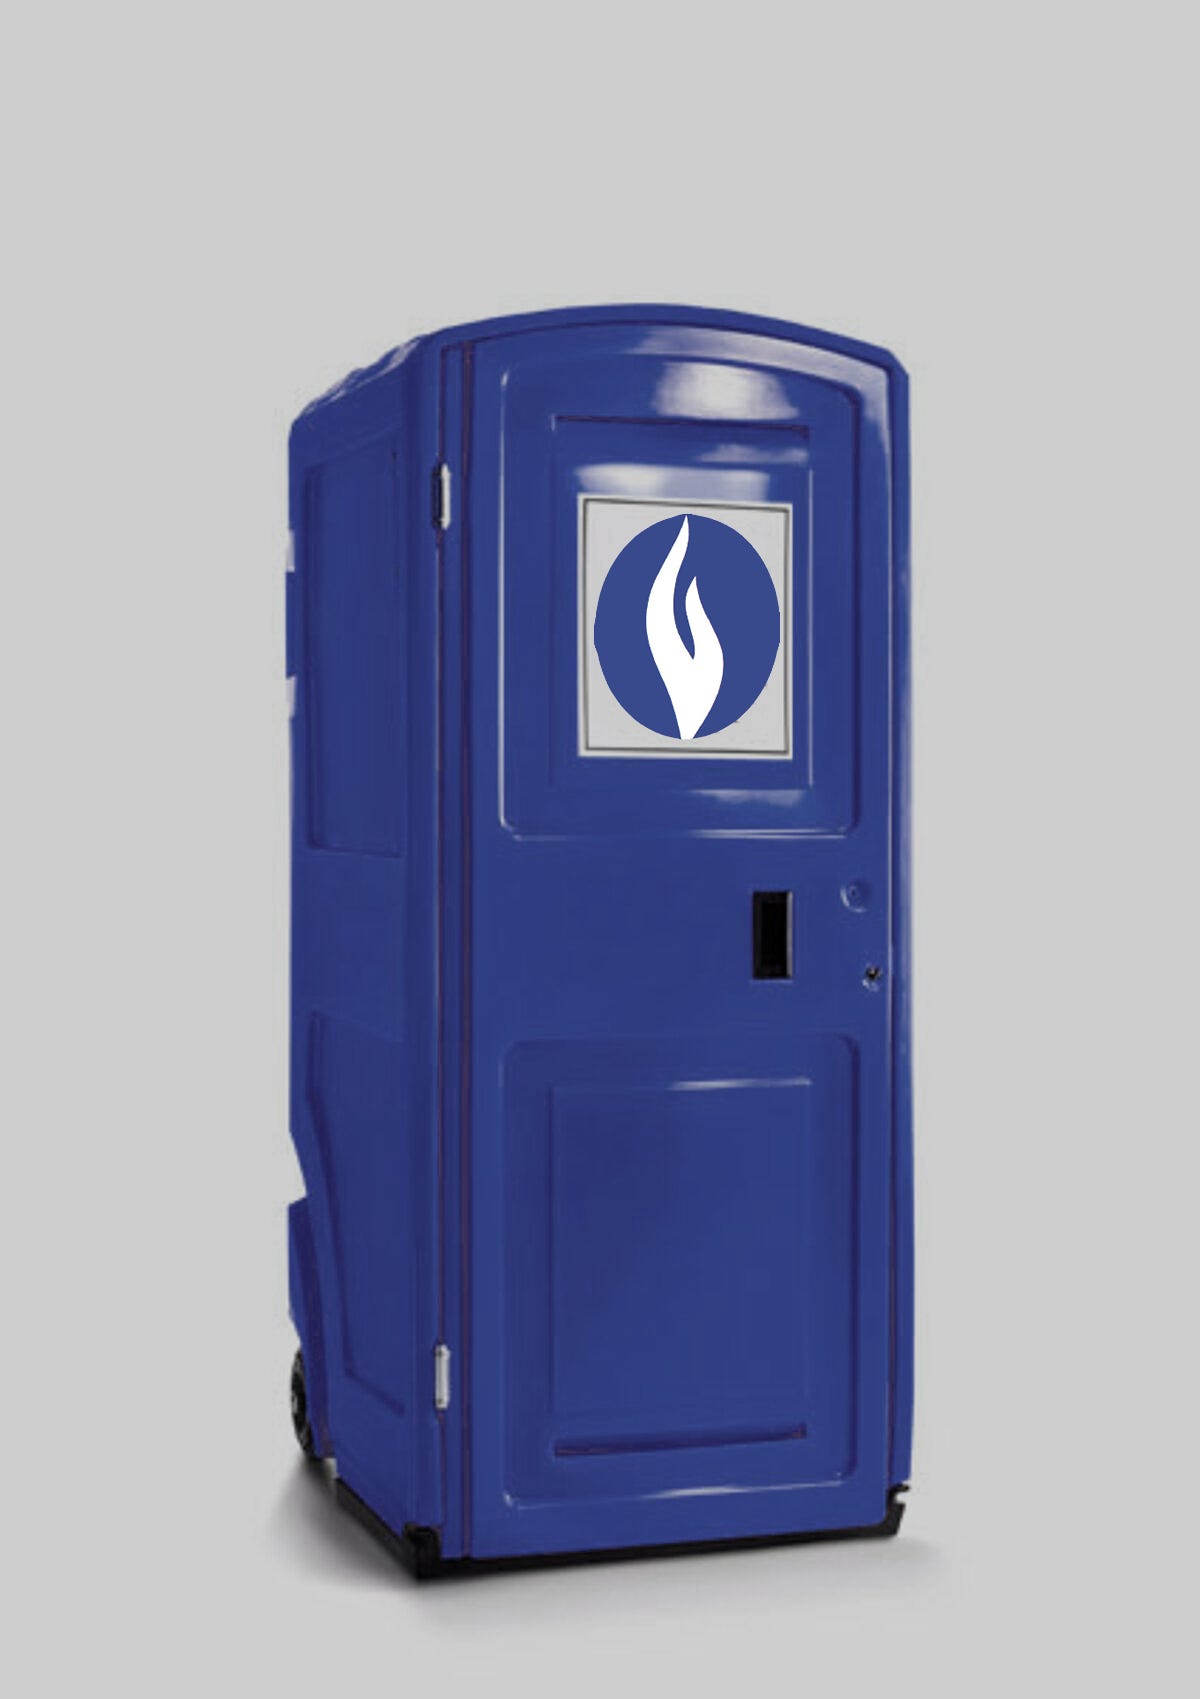 Photoshop van een blauwe toi-toi toilet in politieblauw met een gelijkaardig logo.